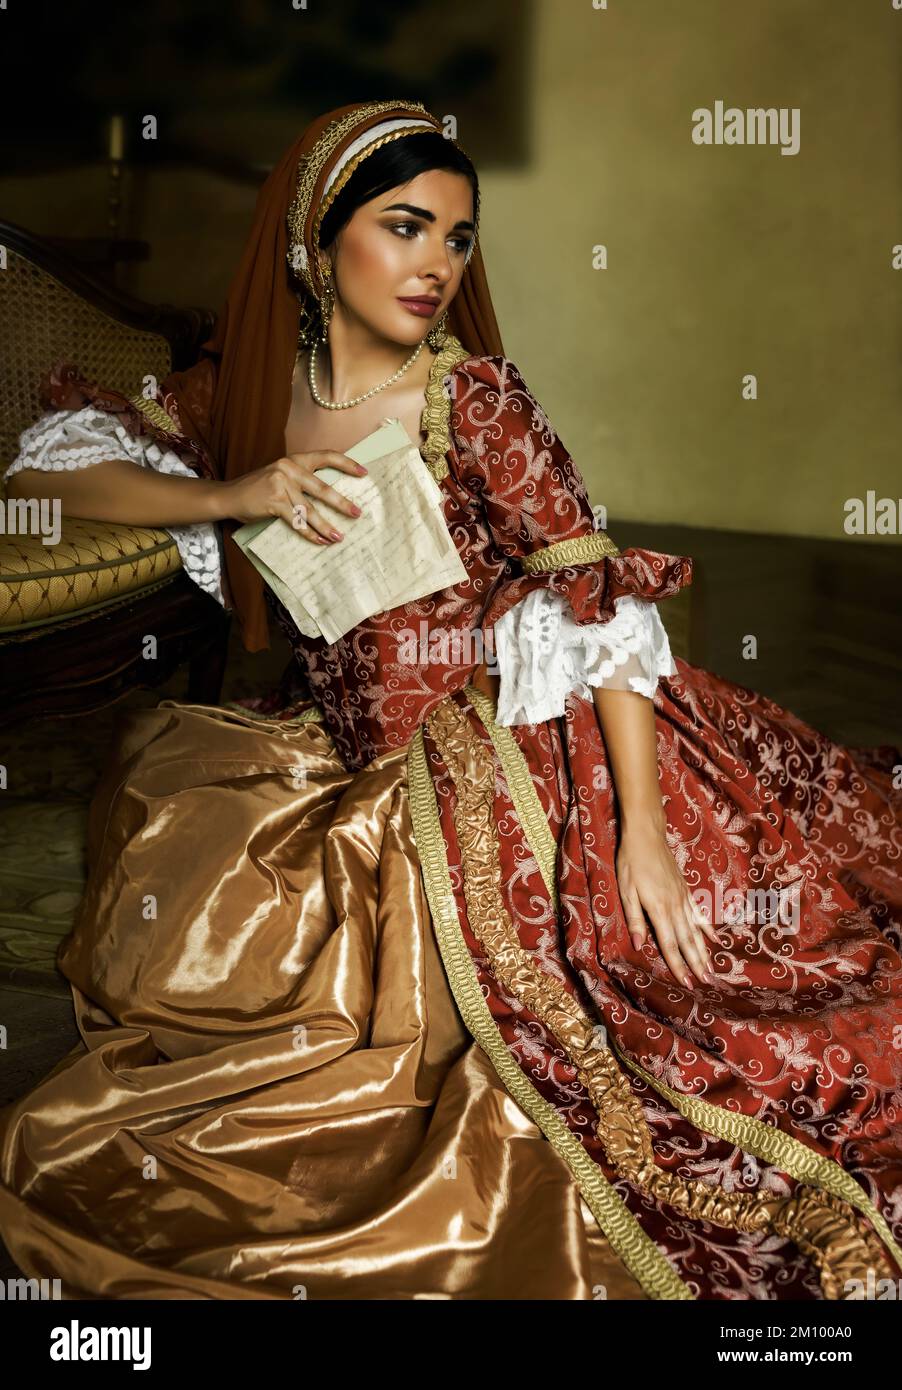 Junge Frau in mittelalterlichem Renaissance-Kostüm und französischer Kapuze, die mit einem Brief auf dem Boden sitzt Stockfoto